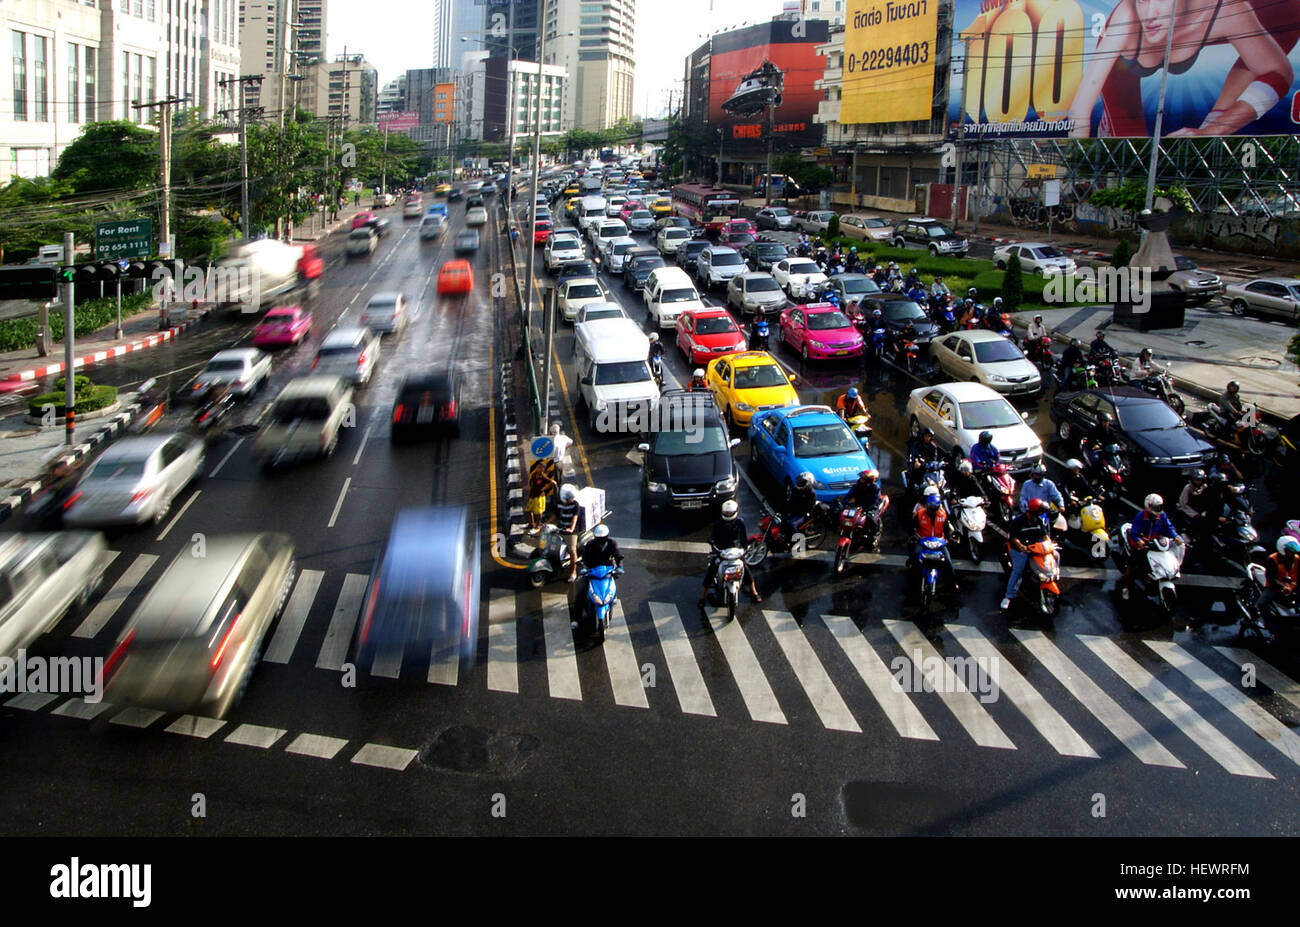 Es gibt mehr als 7,5 Millionen zugelassene Fahrzeuge auf den Straßen von Bangkok, fast einer für jeden Einwohner eine Stadt mit 9 Millionen Einwohnern. Es ist oft genannt "Rush Hour", nur es dauert fast den ganzen Tag. LKW, Traktoren, Busse, Motorräder, Limousinen, Auto-Rikschas machen Bangkok ein langjähriges Aushängeschild für städtische Stillstand. Die Stadt von 11 Millionen treibt selbst zum Stillstand erwartungsgemäß diese Staus ist noch viel schlimmer in 2013 zu Stockfoto